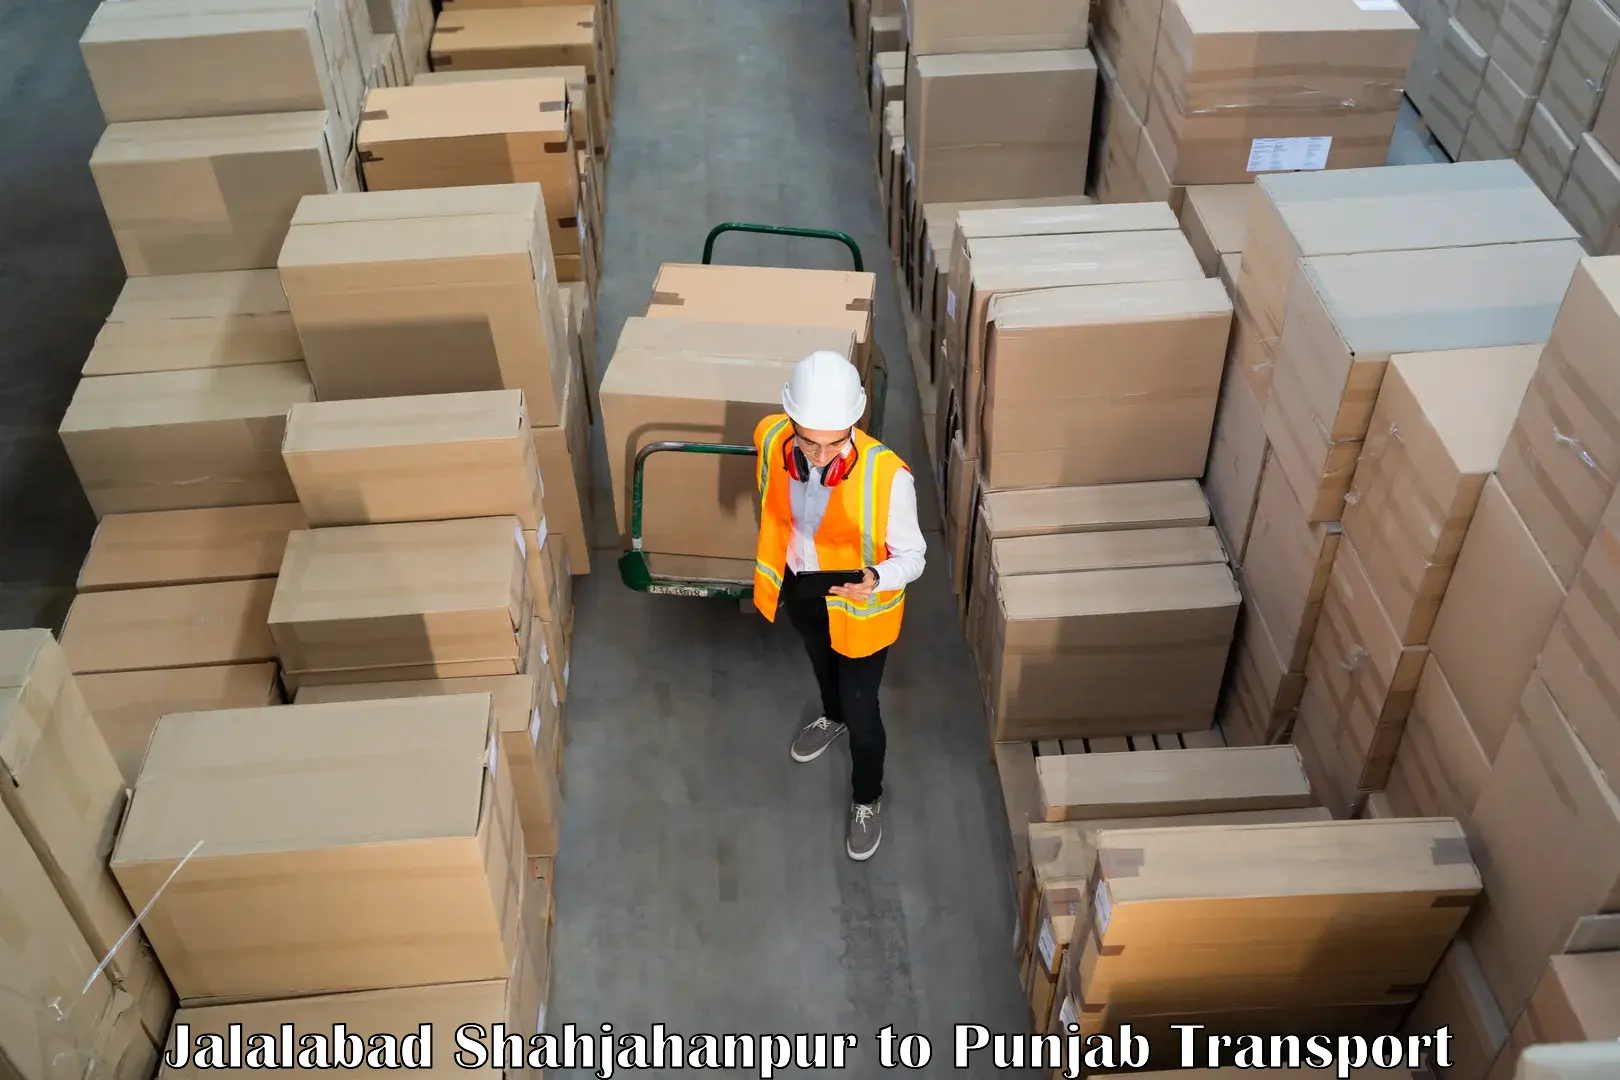 Shipping partner in Jalalabad Shahjahanpur to Jalalabad